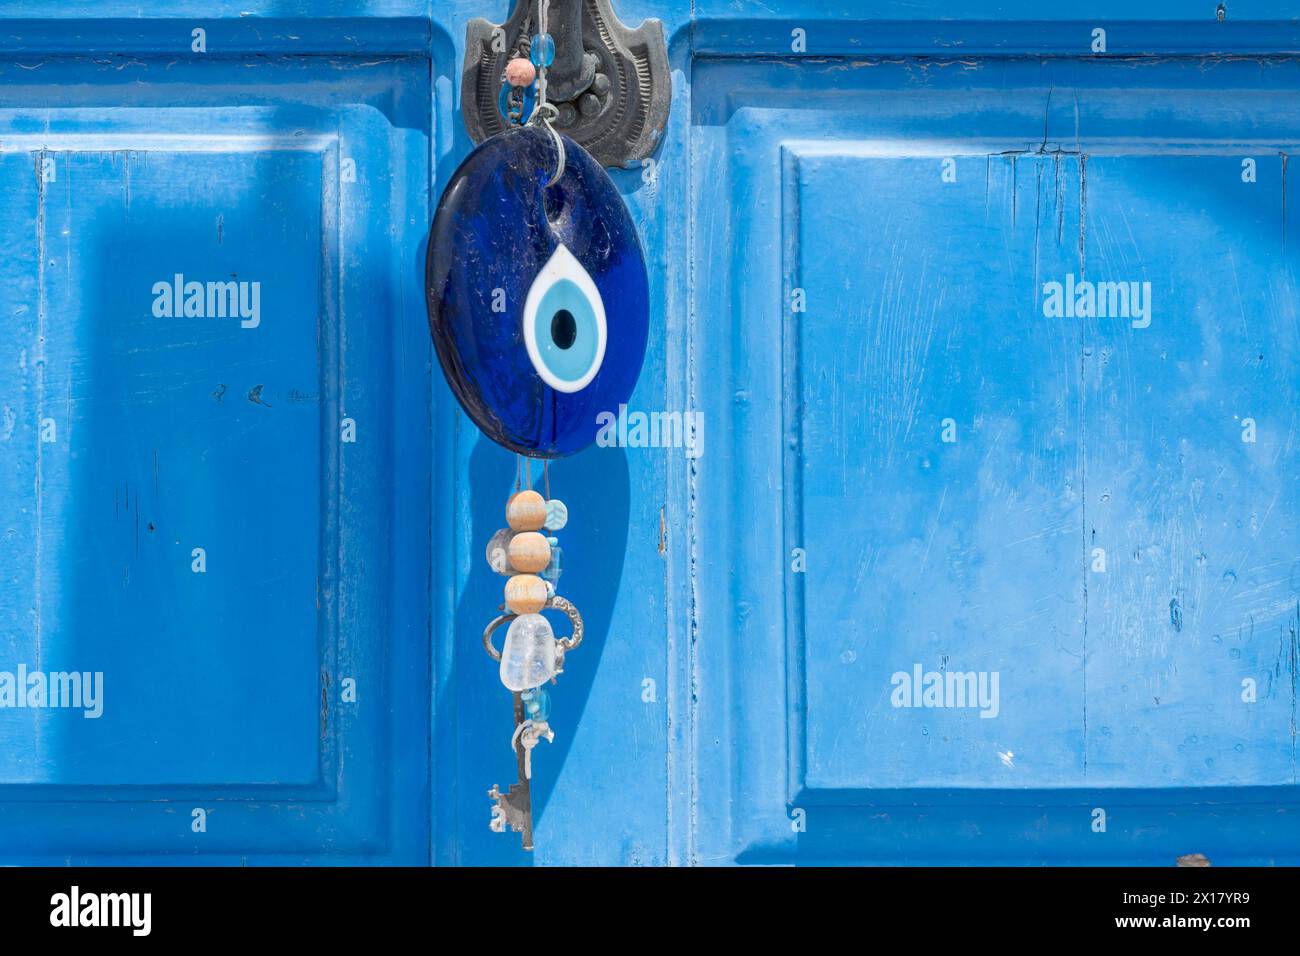 Das böse Auge Souvenir hängt an der griechischen Tür. Blaues Steinamulett in Form eines Auges zum Schutz vor bösen Menschen. Insel Nisyros, Griechenland Stockfoto